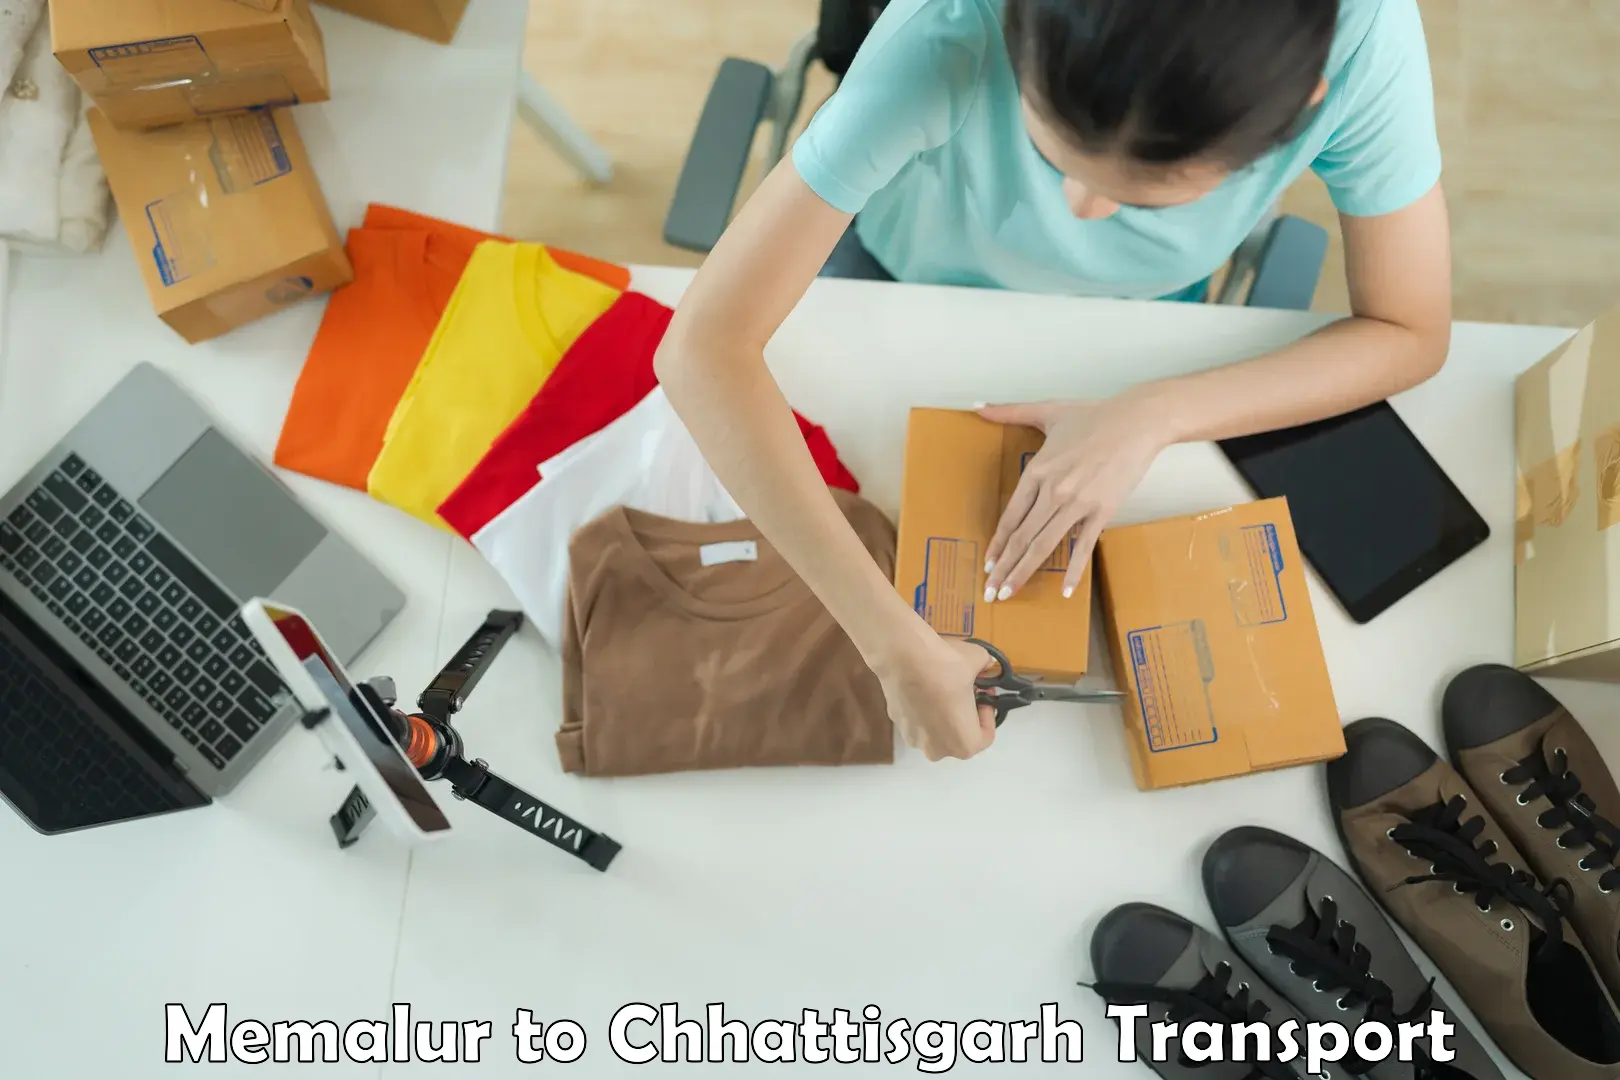 Furniture transport service Memalur to Mandhar